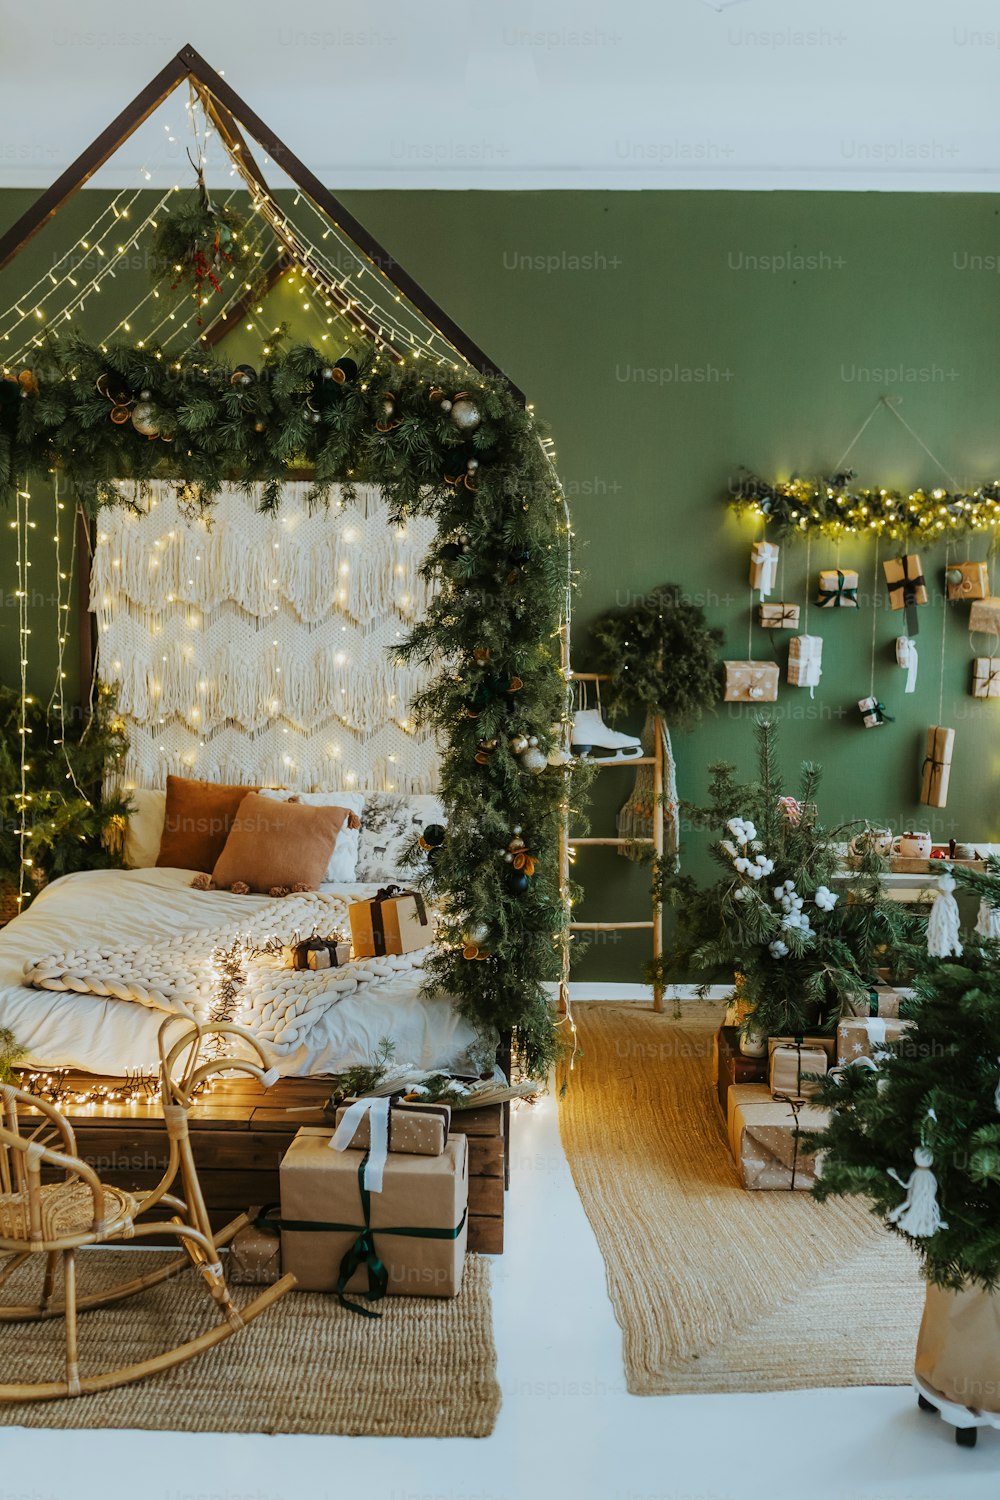 Ein weihnachtlich geschmücktes Schlafzimmer mit Lichtern und Geschenken